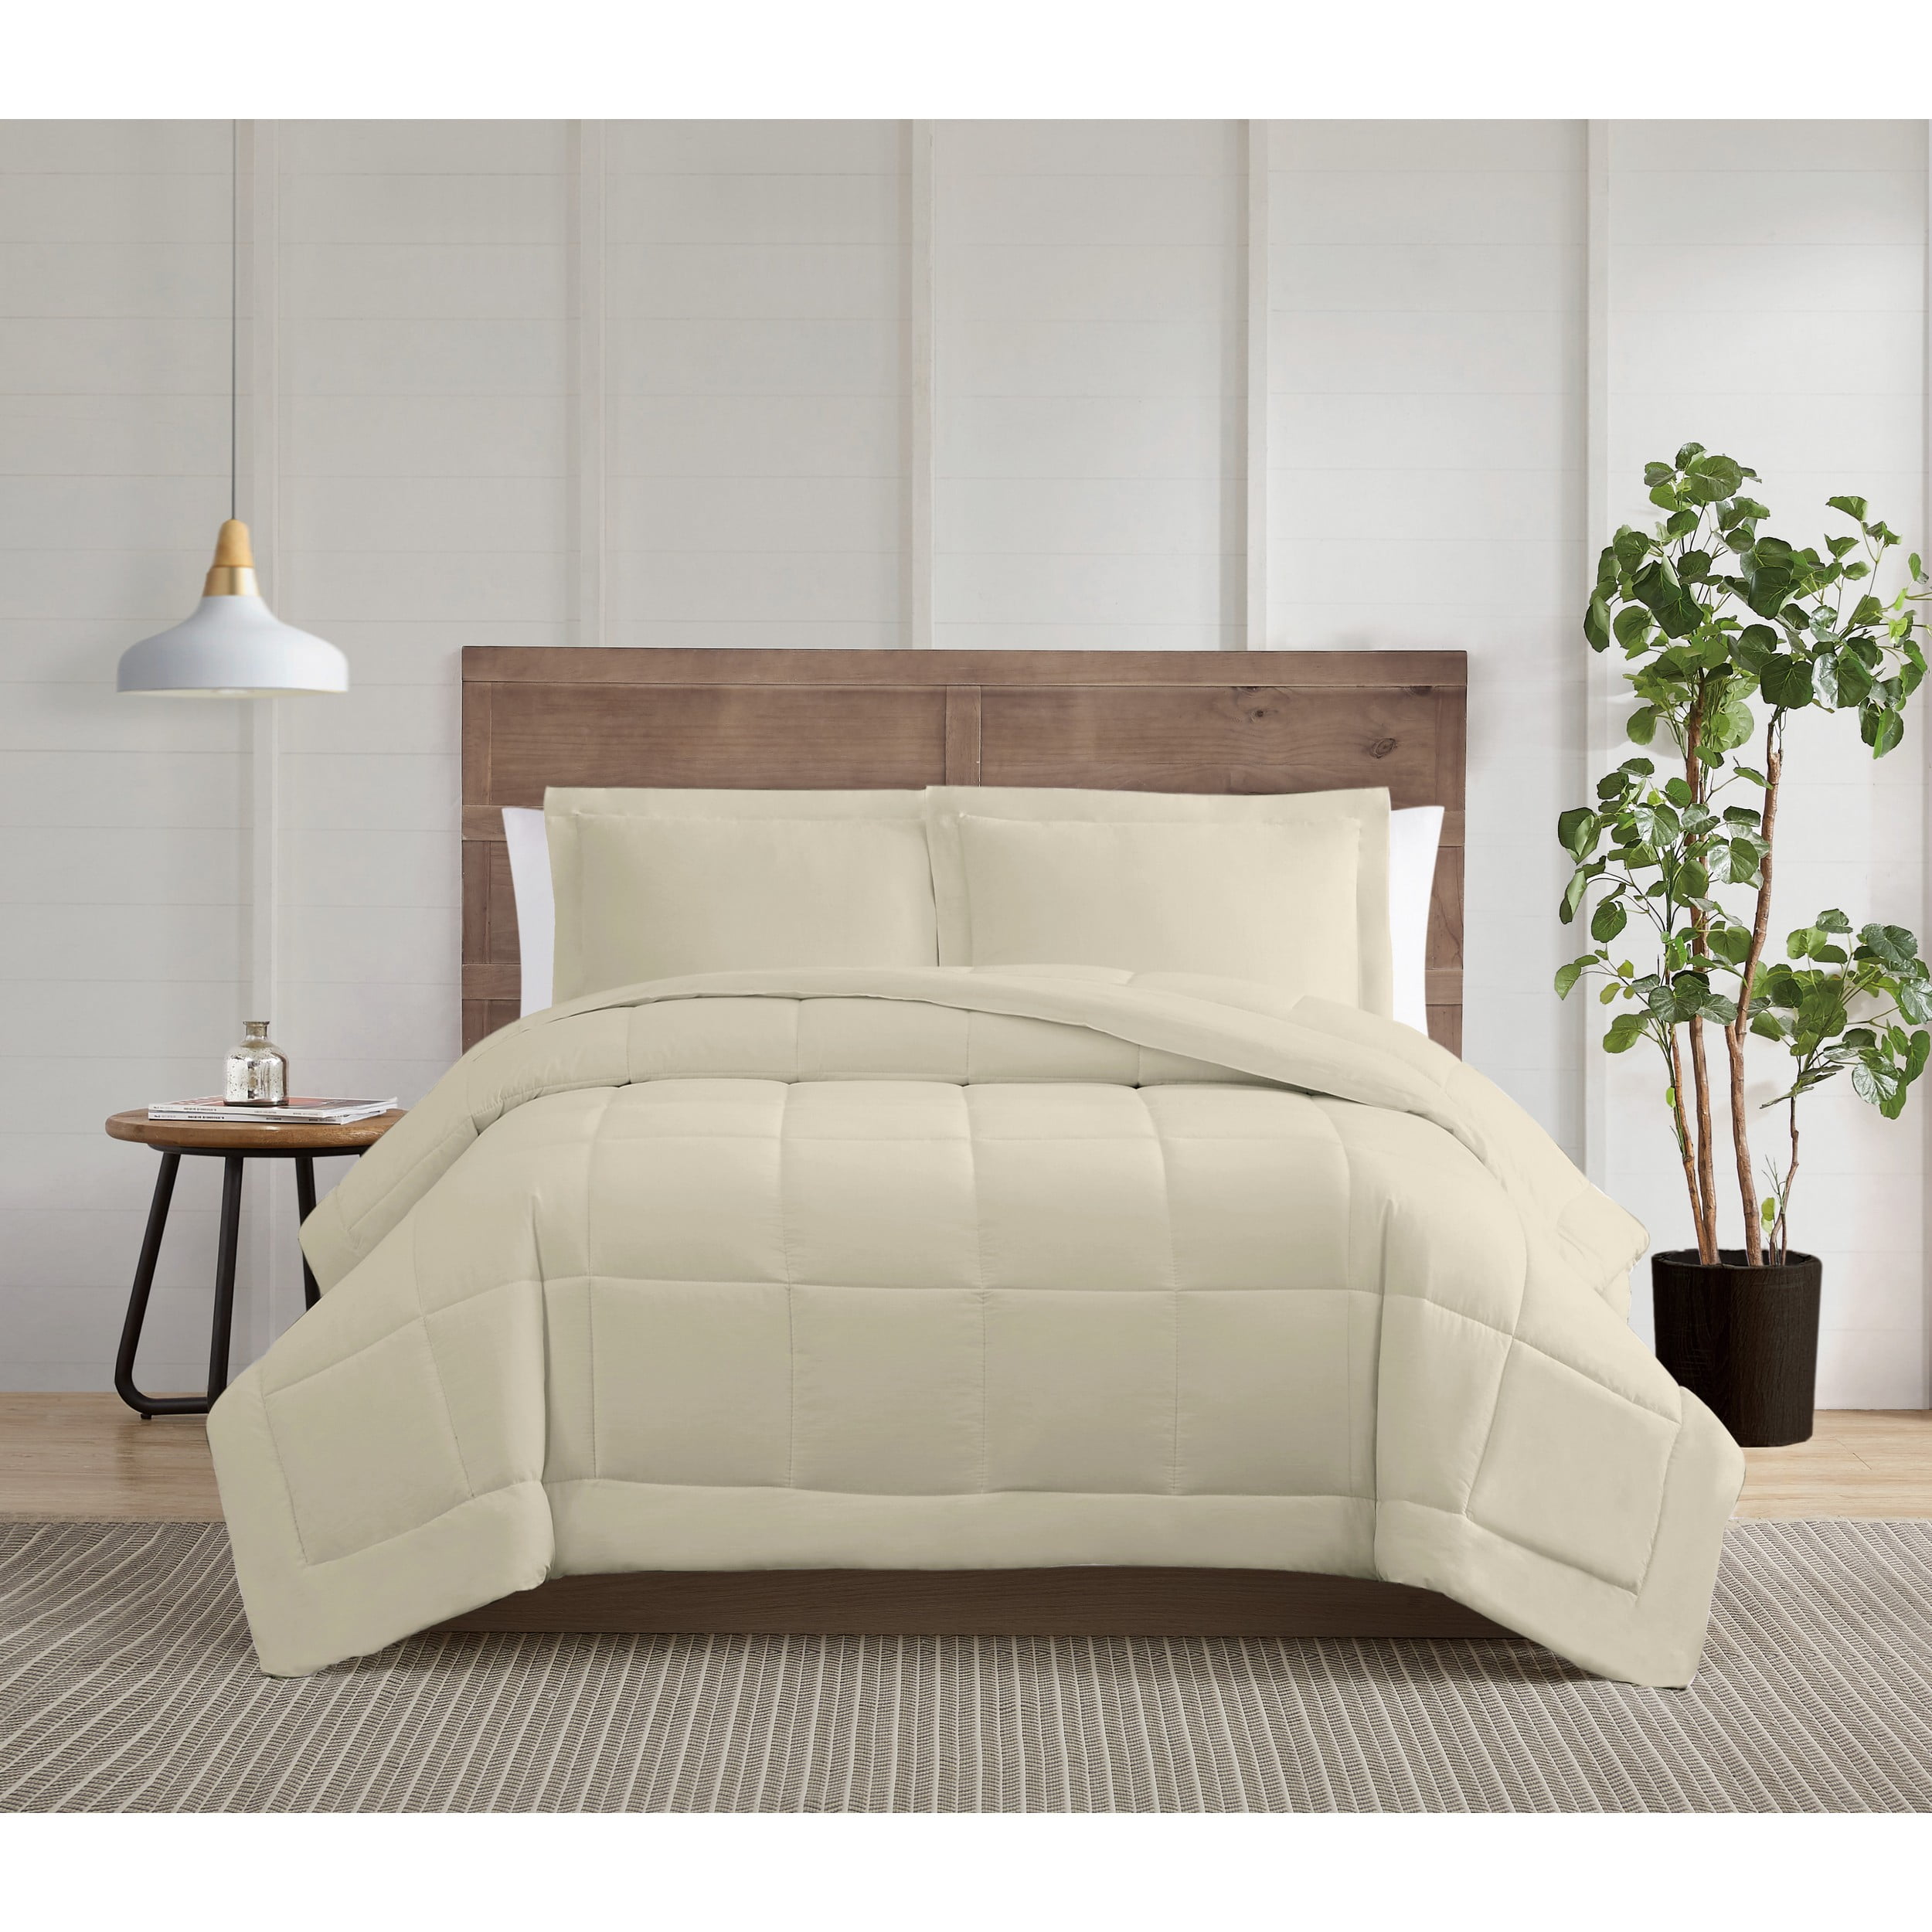 SILVER Serene WHITE Raised Check Pintuck Detail Duvet Cover Bed Set BLUSH